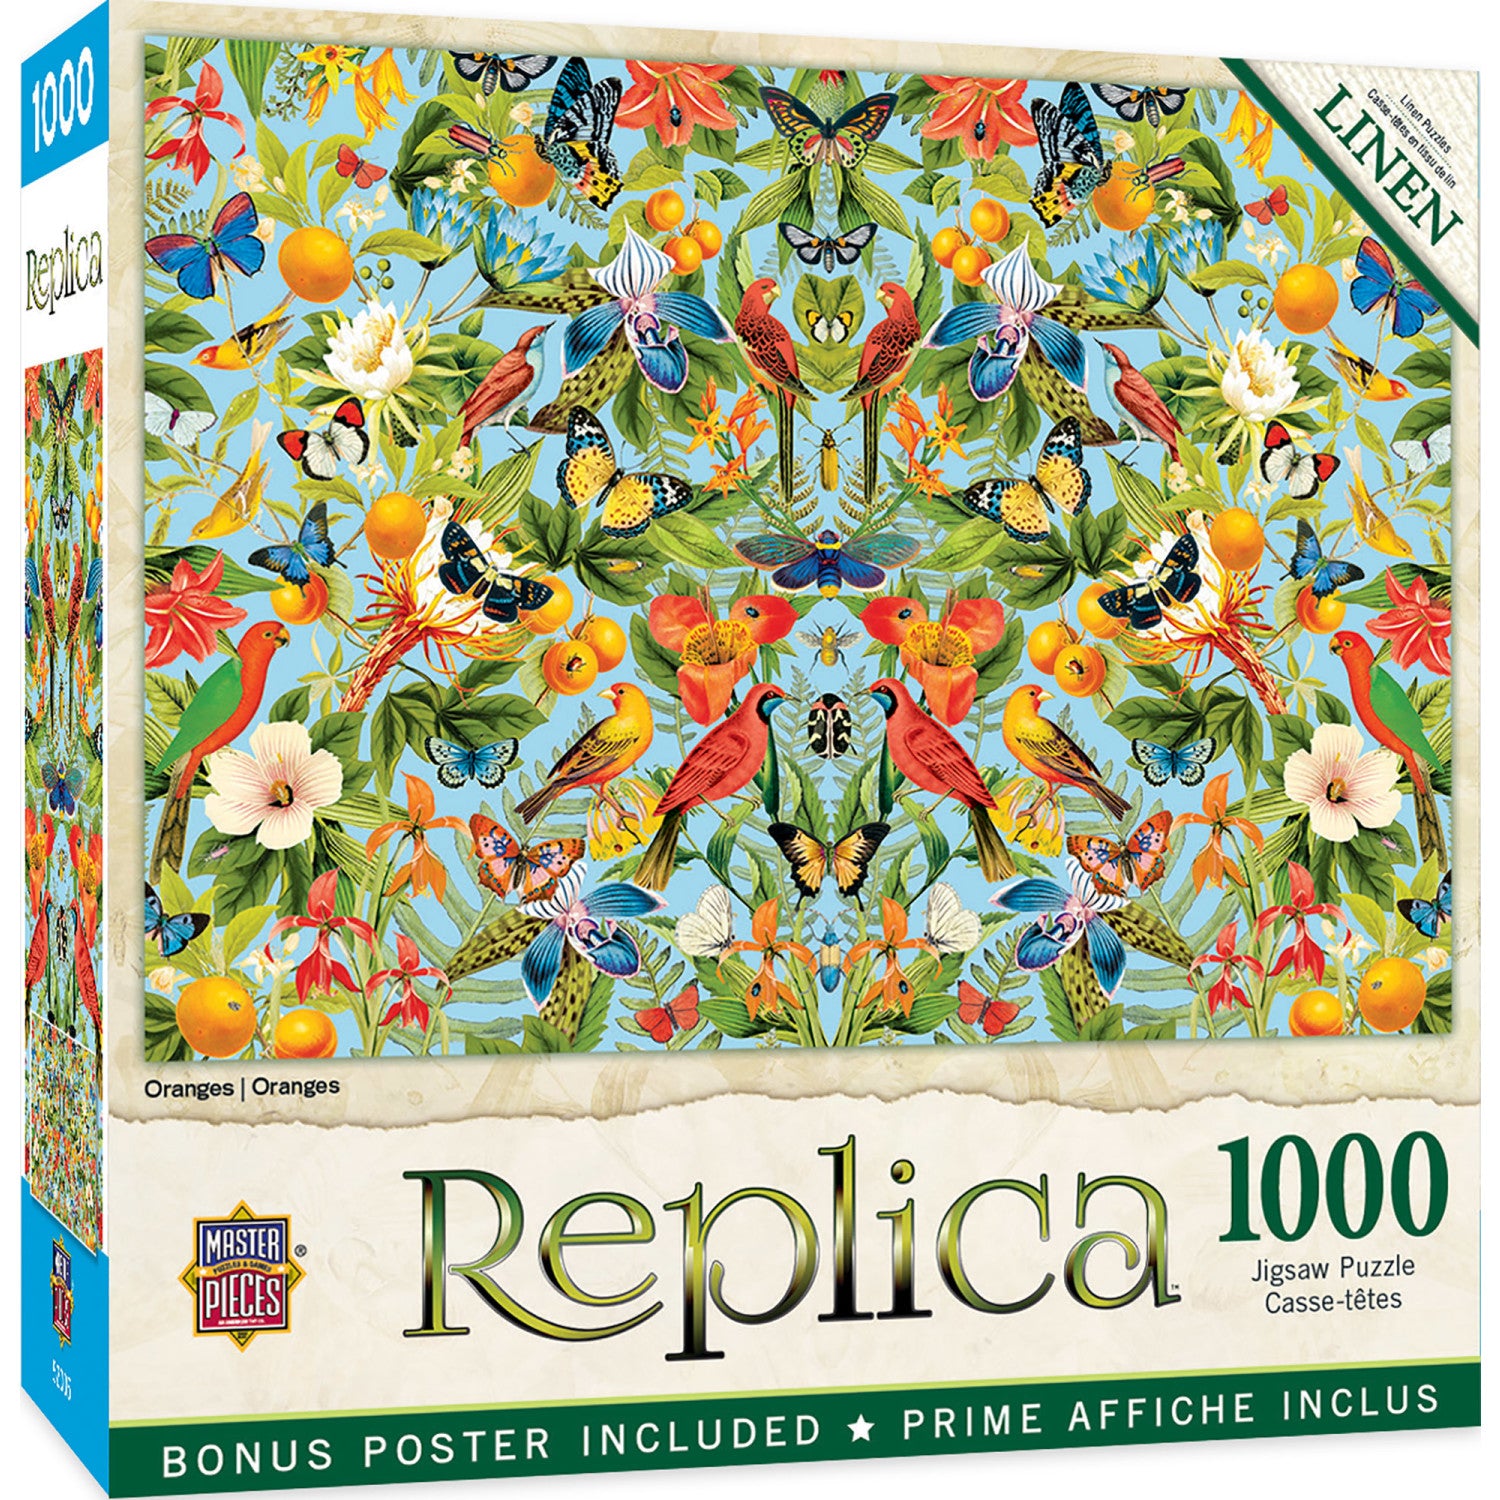 Replica - Oranges 1000 Piece Puzzle